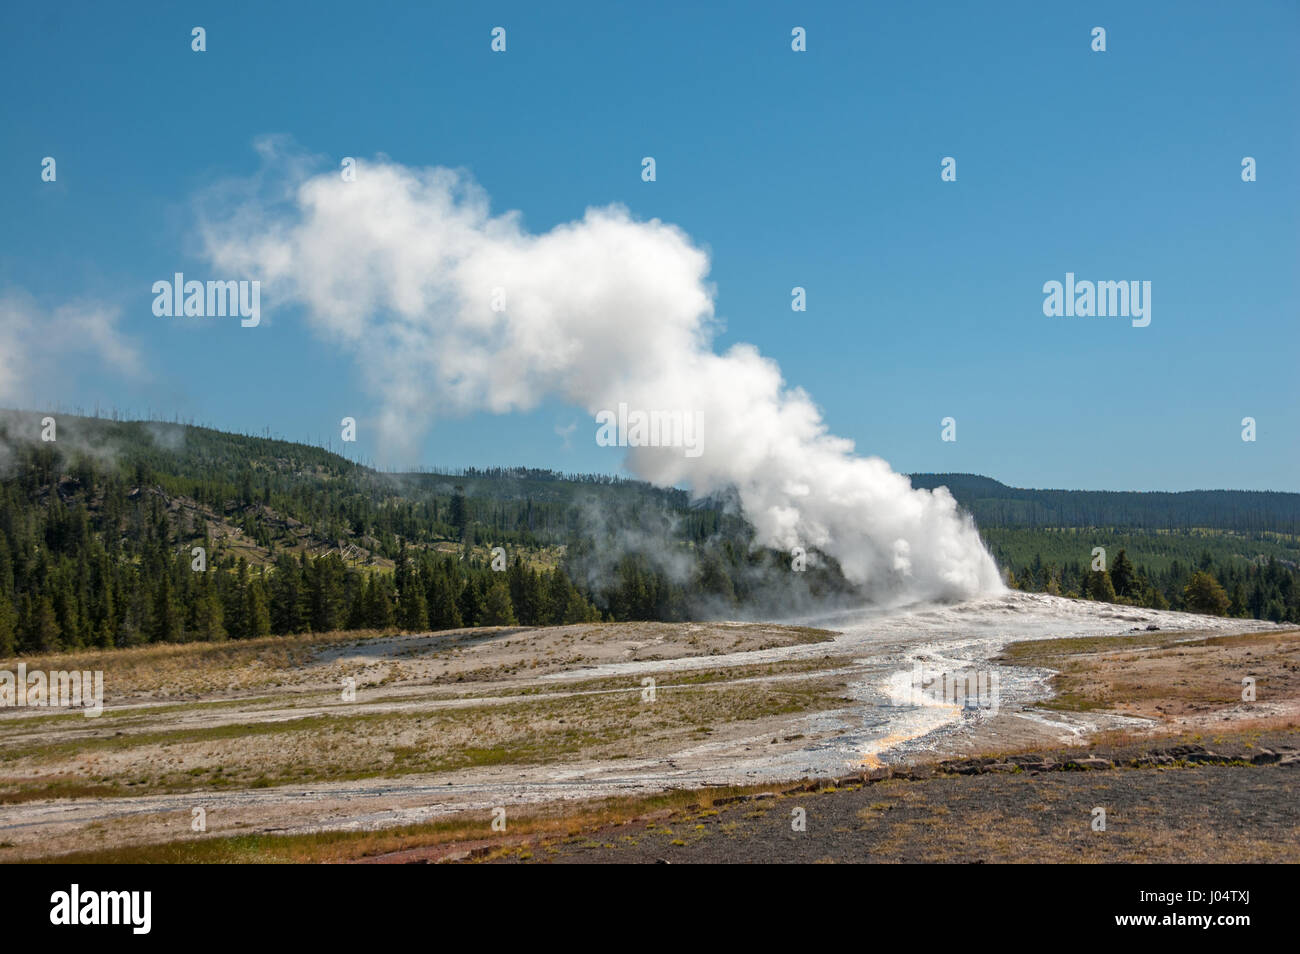 Ein Geysir im Yellowstone-Nationalpark Schläge-off Dampf während kochend heißes Wasser rieselt einem gewundenen Kanal in Richtung Vordergrund. Stockfoto